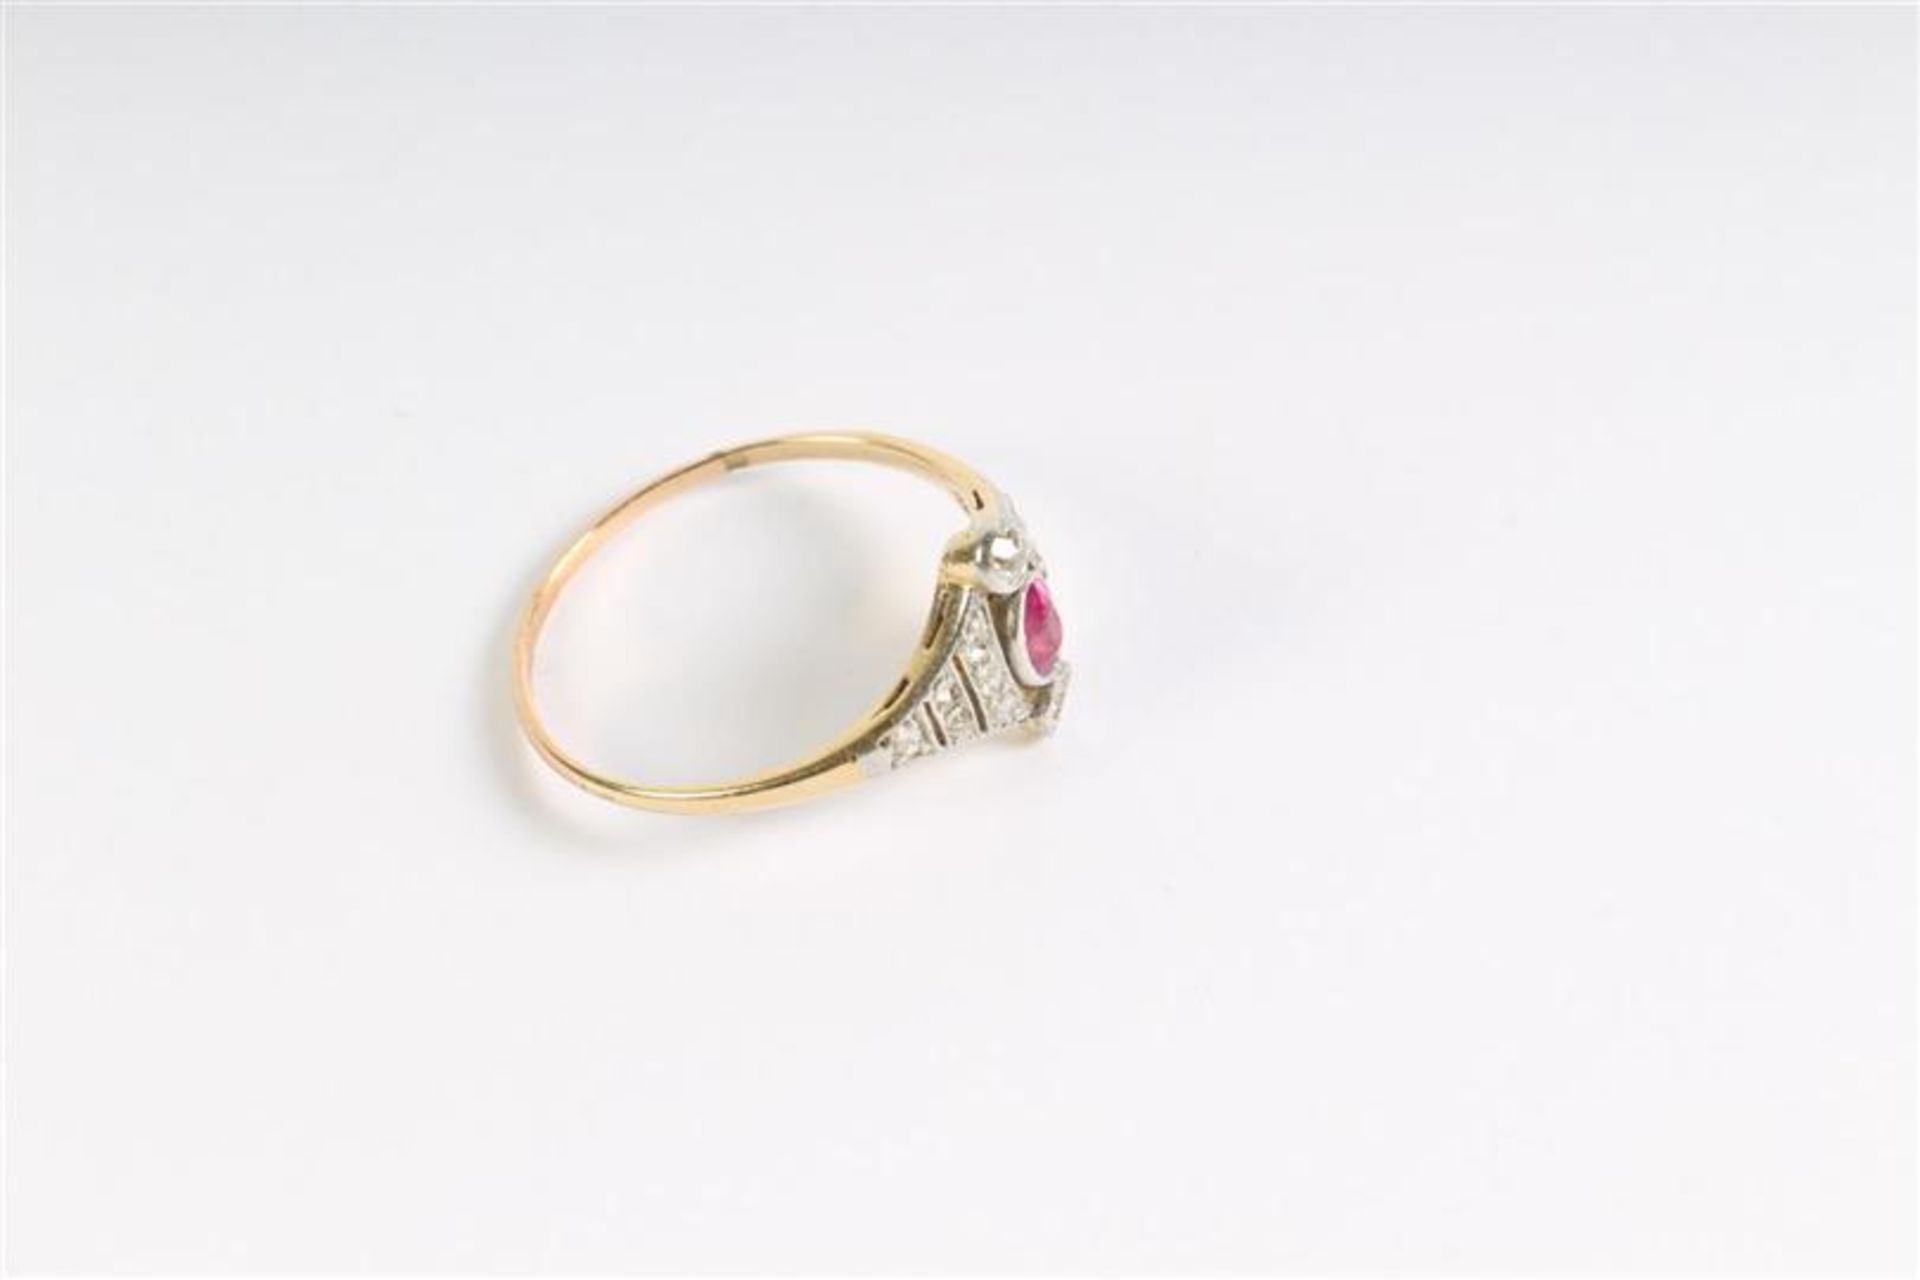 Gouden ring met diamant en robijn. Gewicht: 2.2 g. Ringmaat: 19.25. - Bild 3 aus 4